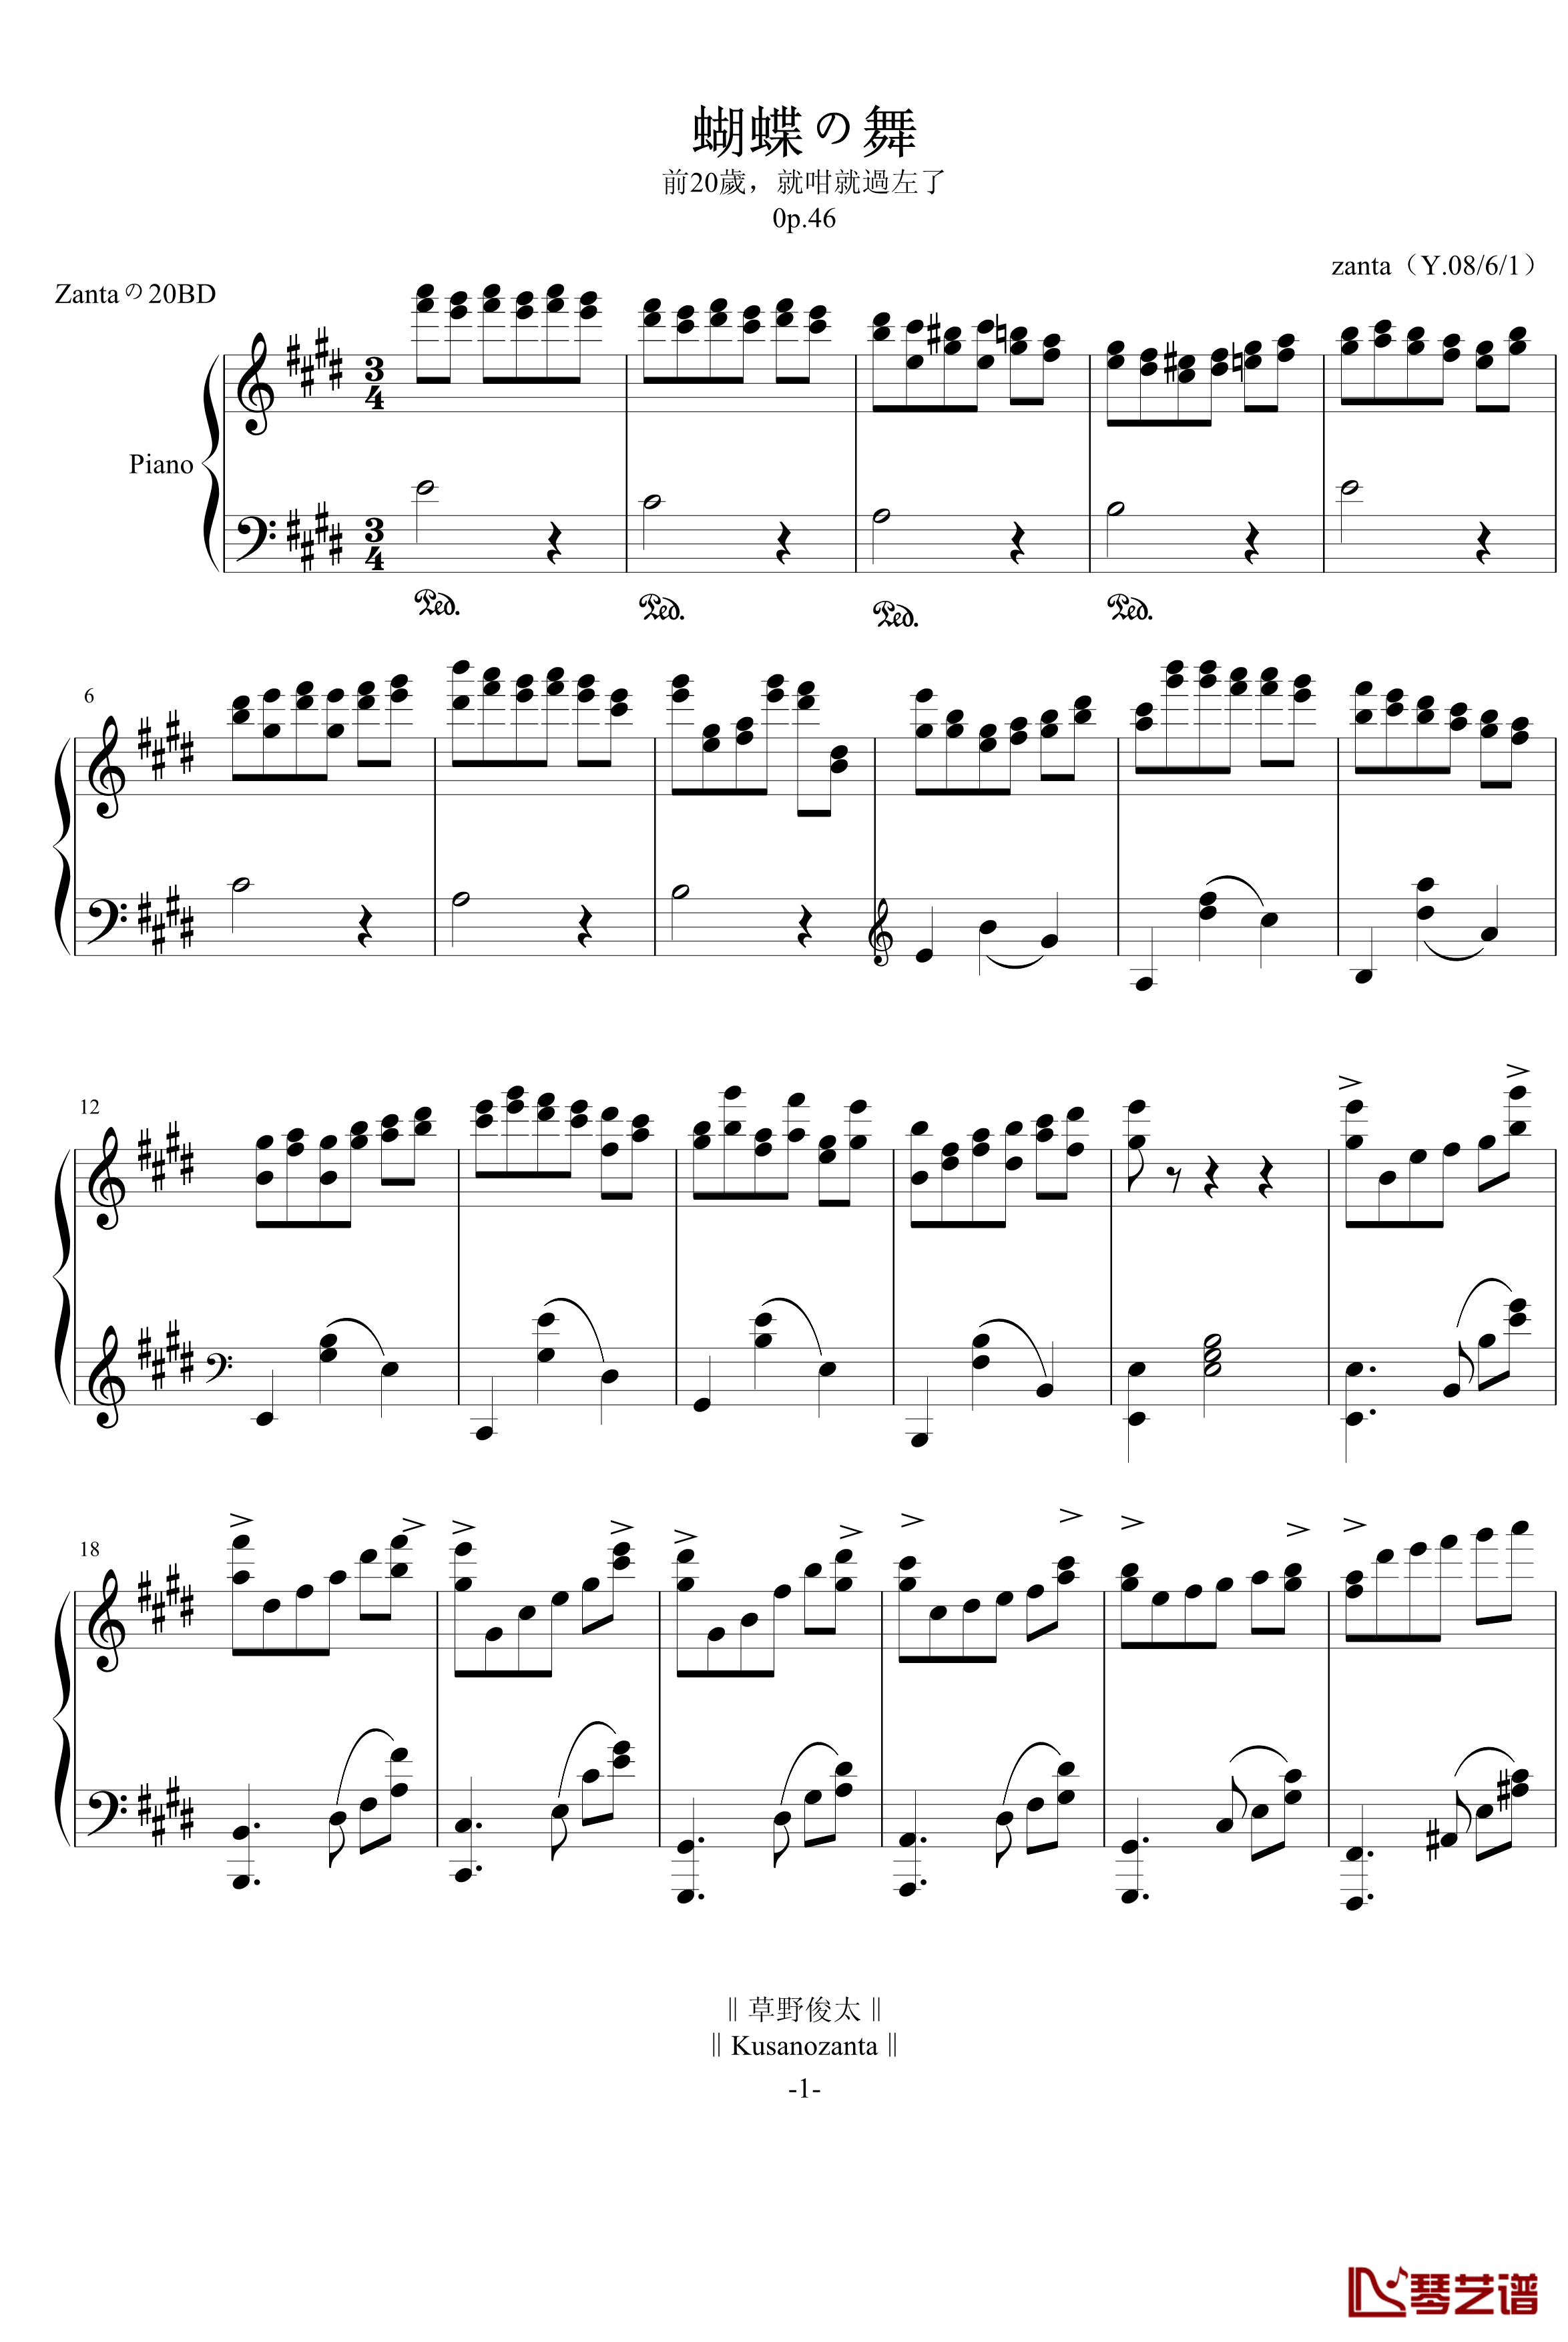 蝴蝶の舞钢琴谱-zanta1